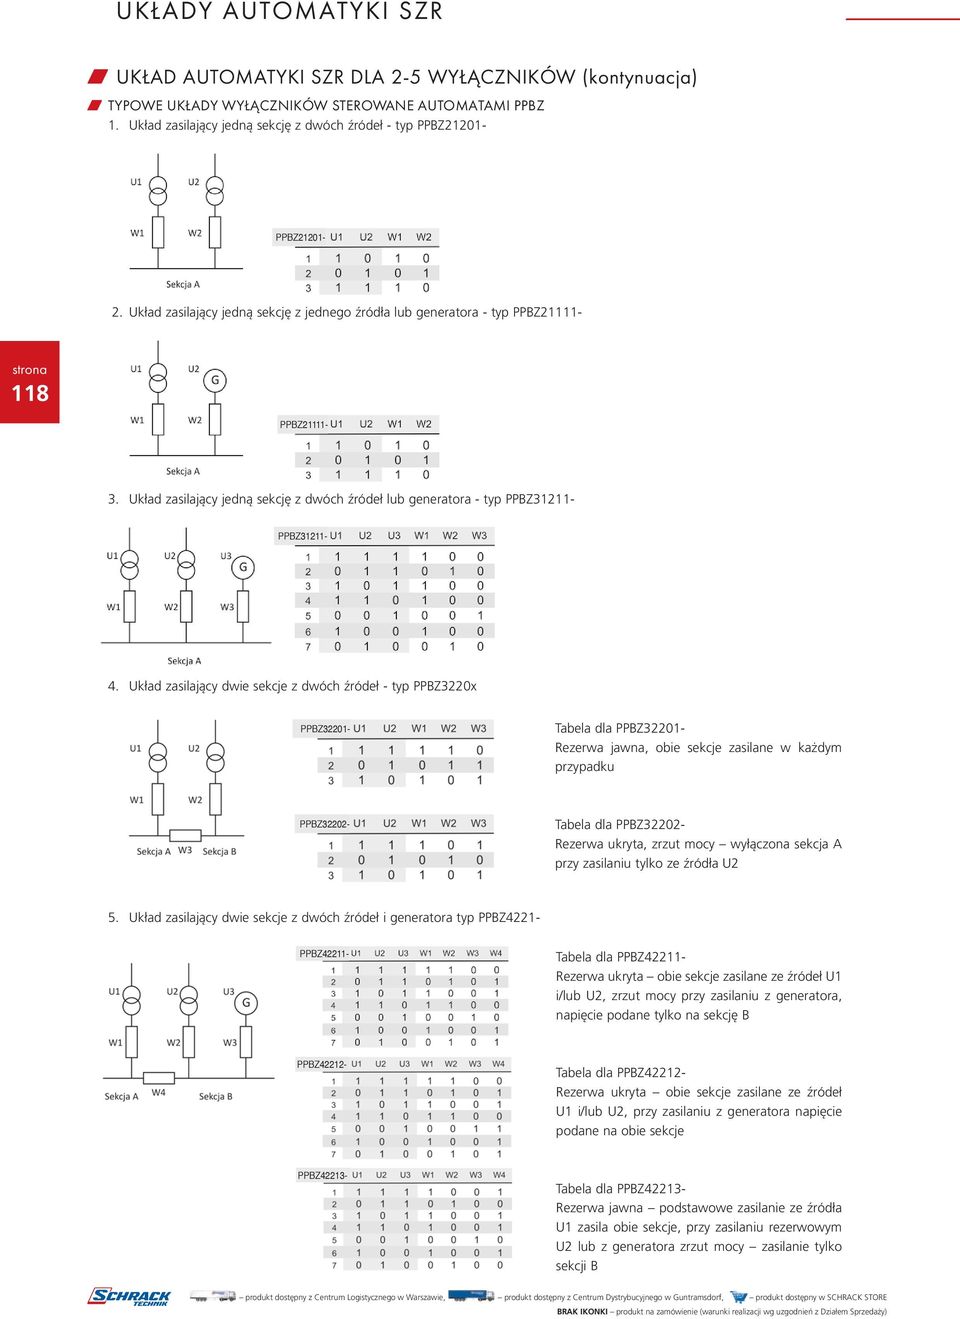 Układ zasilający dwie sekcje z dwóch źródeł - typ PPBZ3220x Tabela dla PPBZ32201- Rezerwa jawna, obie sekcje zasilane w każdym przypadku PPBZ21201- PPBZ21111- PPBZ31211- PPBZ32201- PPBZ32202- Tabela